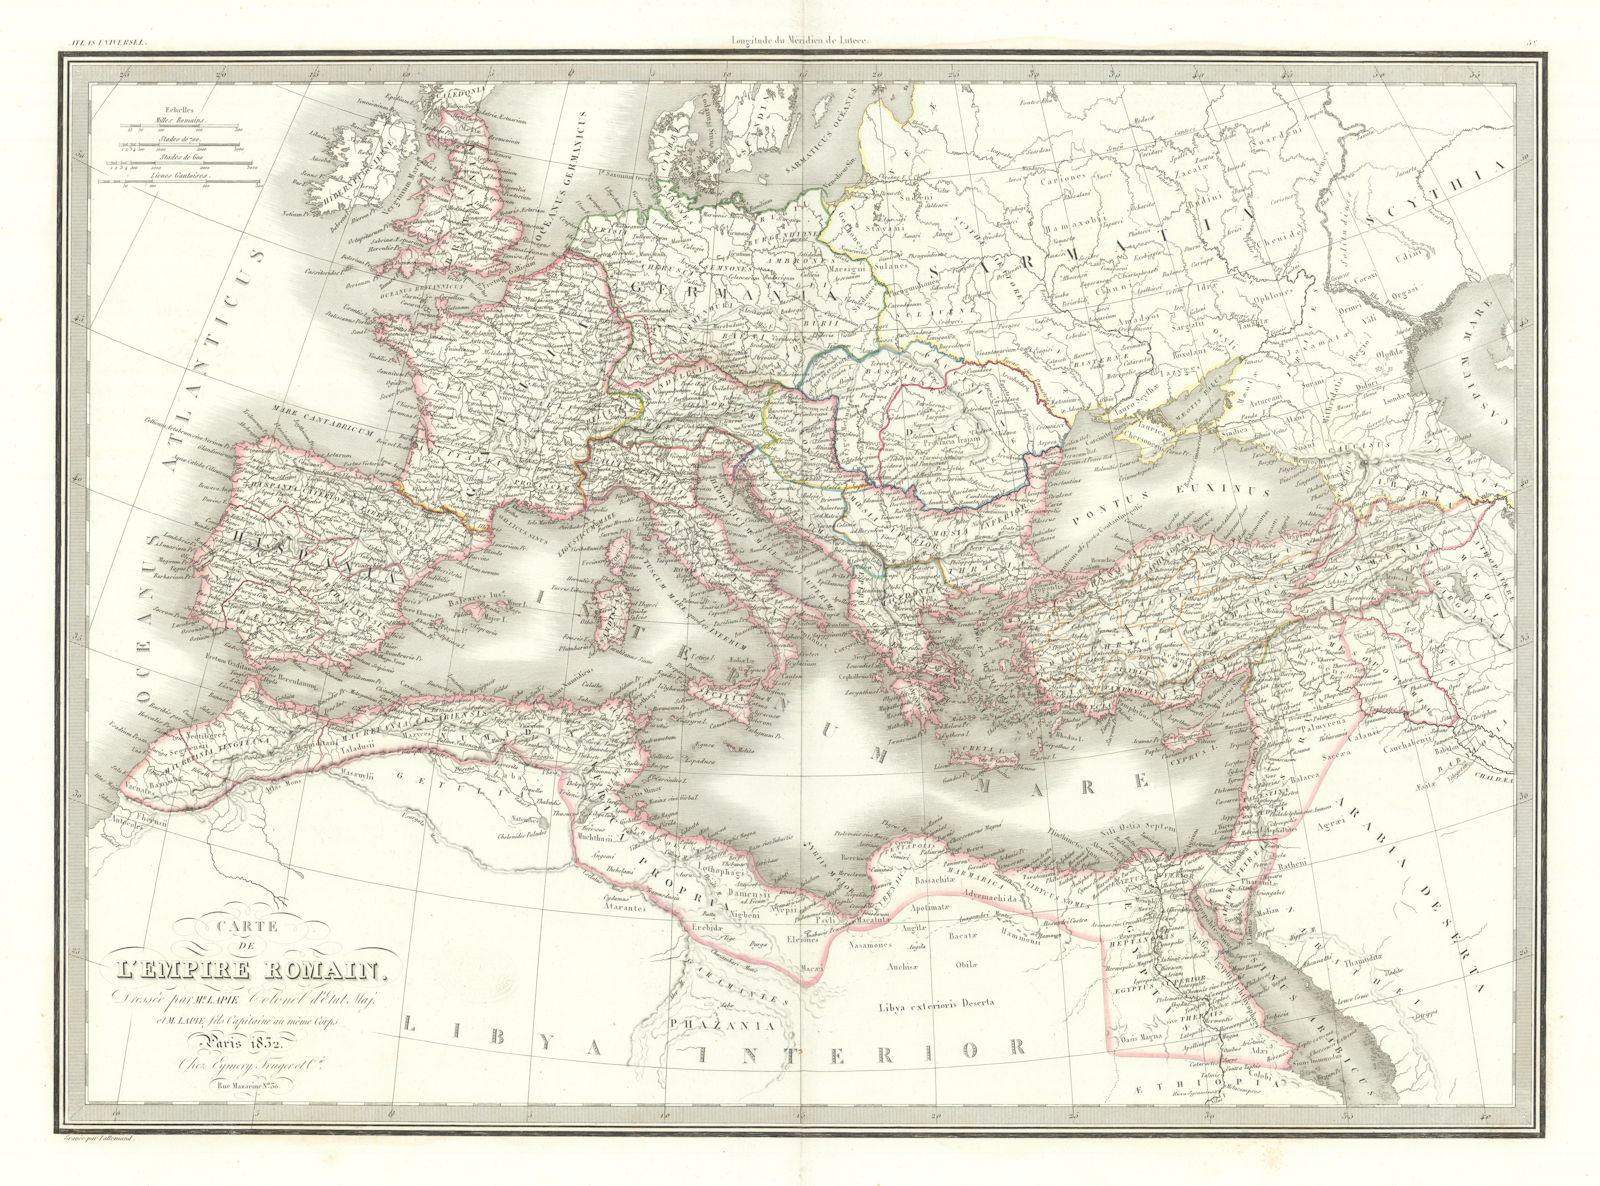 Associate Product Carte de l'Empire romain. The Roman Empire. LAPIE 1832 old antique map chart